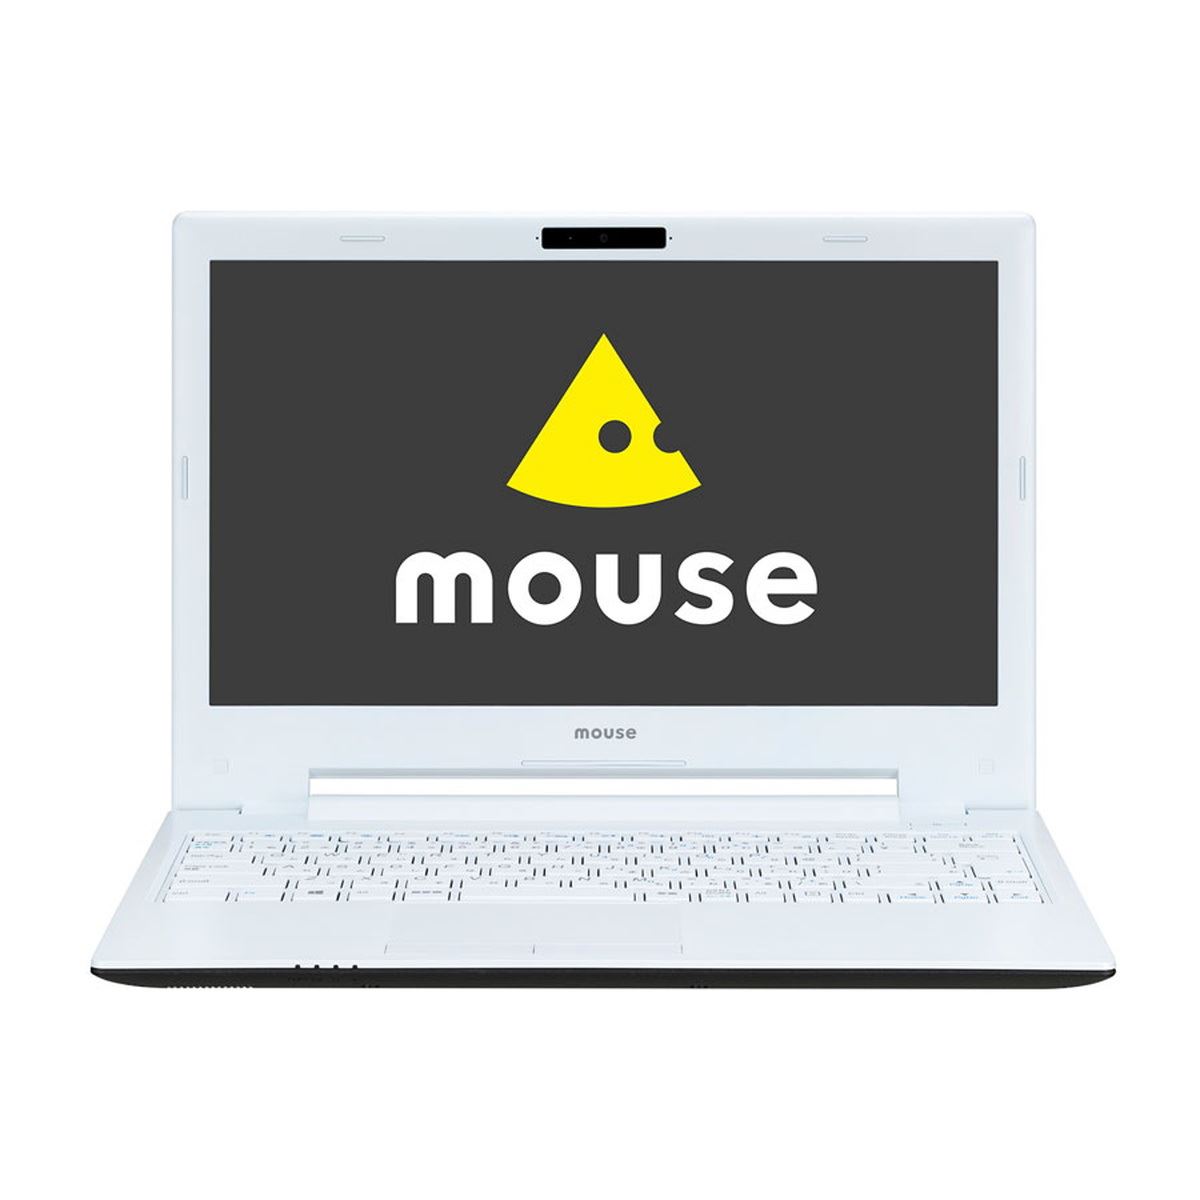 価格.com20周年記念パソコン「マウスモデル」ノートPC レビュー - 価格